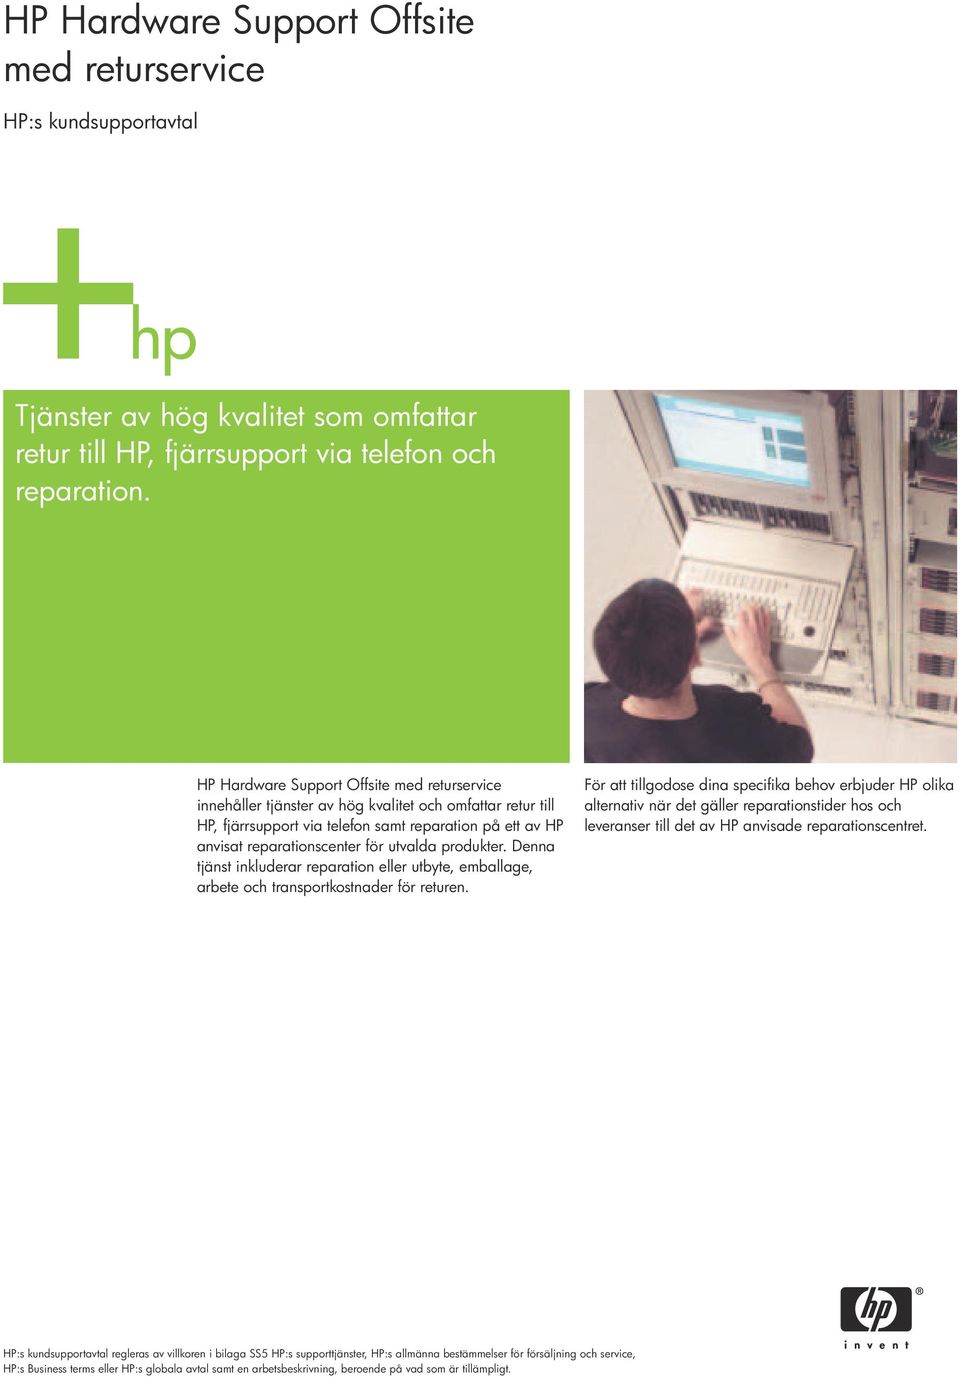 HP anvisat reparationscenter för utvalda produkter. Denna tjänst inkluderar reparation eller utbyte, emballage, arbete och transportkostnader för returen.